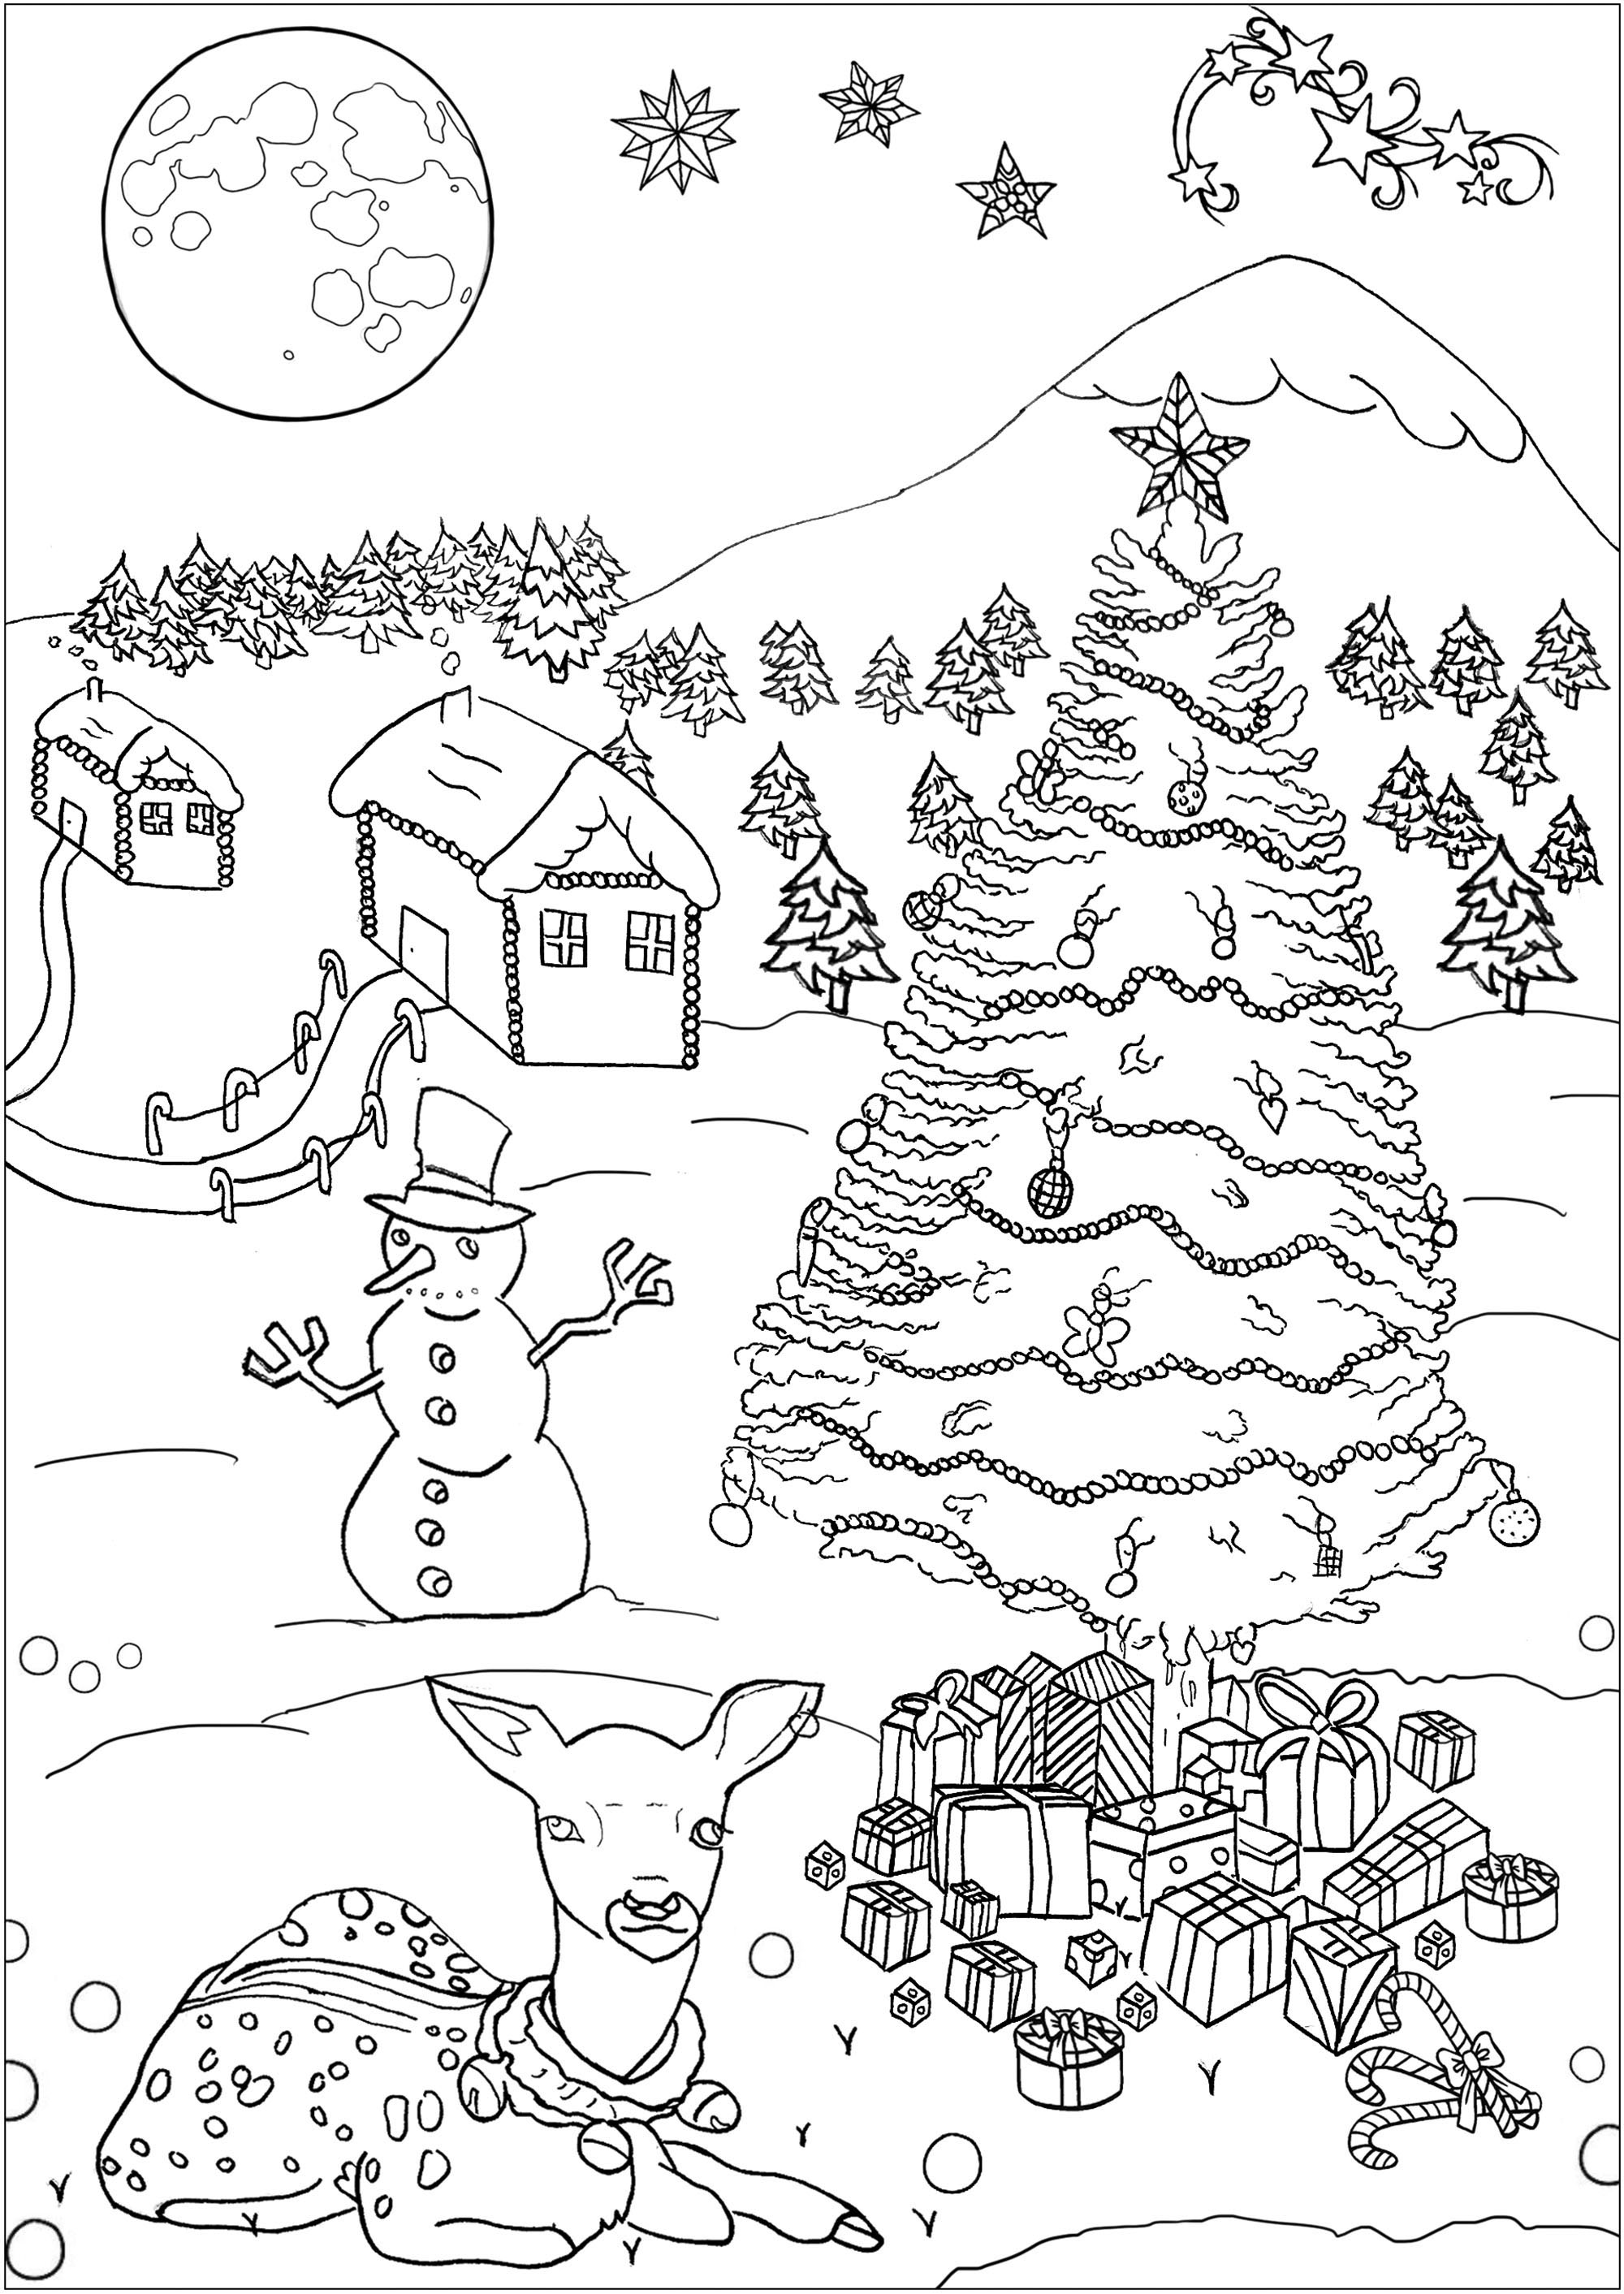 Dibujos para colorear de Navidad para descargar - Navidad - Just Color  Niños : Dibujos para colorear para niños